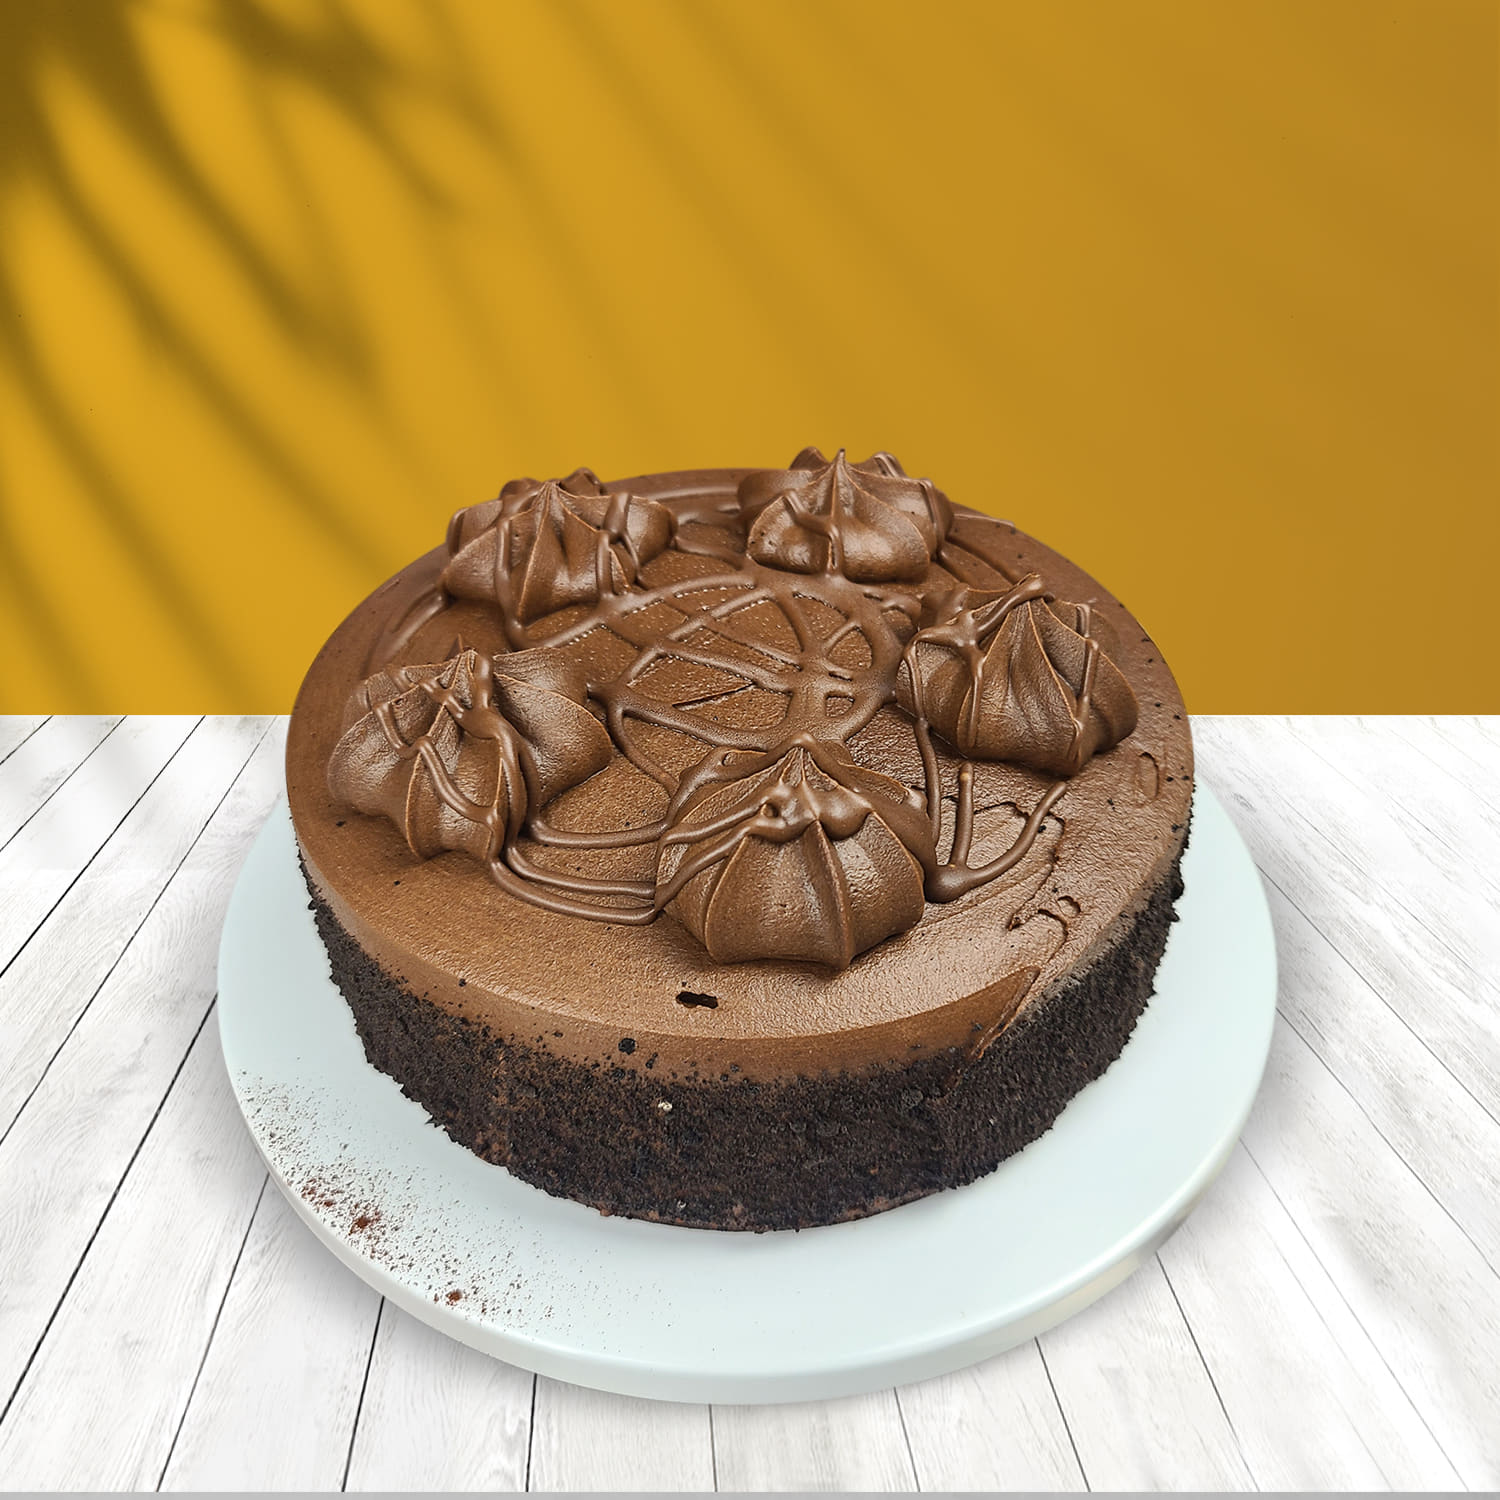 Weeding and birthday cake 🎂 double decker. Place your order now  #cakeexpress#bestdesign #doubledecker#weedingcake#anniversarycake#bir... |  Instagram